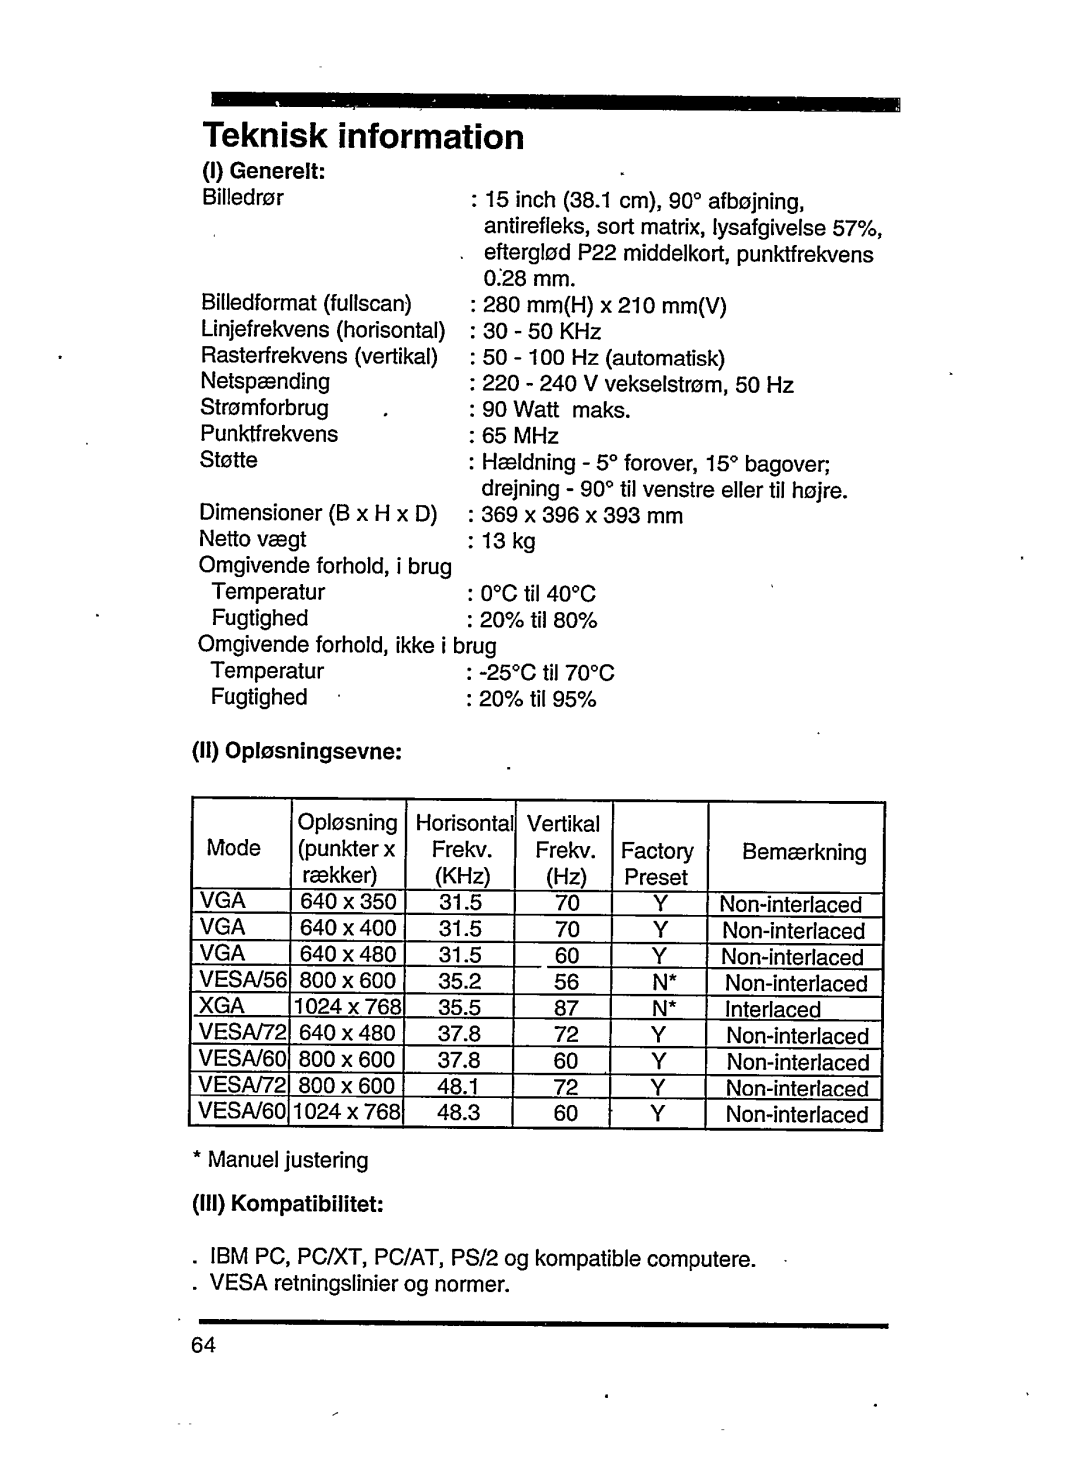 Philips 15C04204 manual 